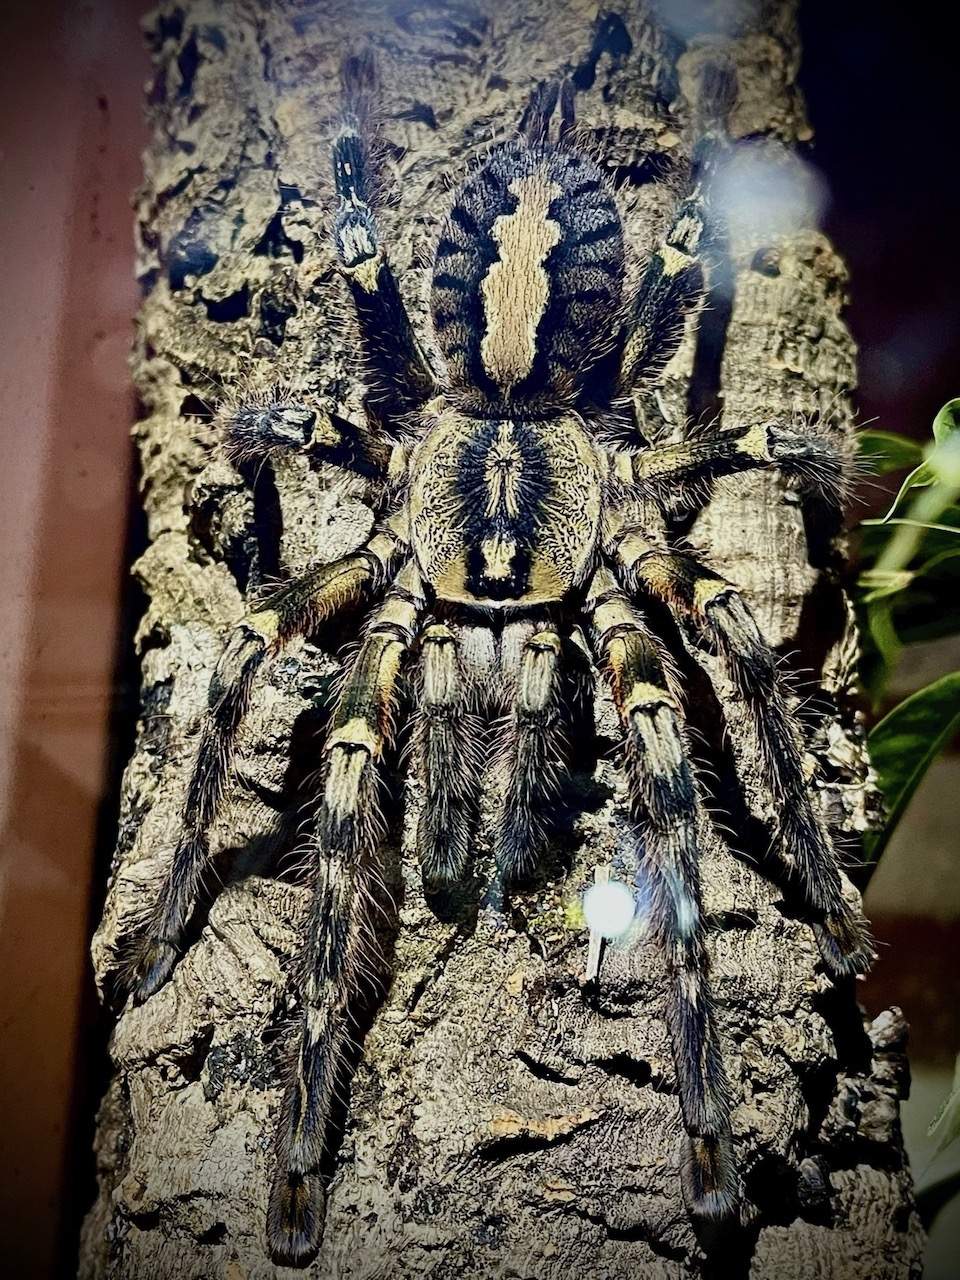 "Melisandre" Sri Lanka